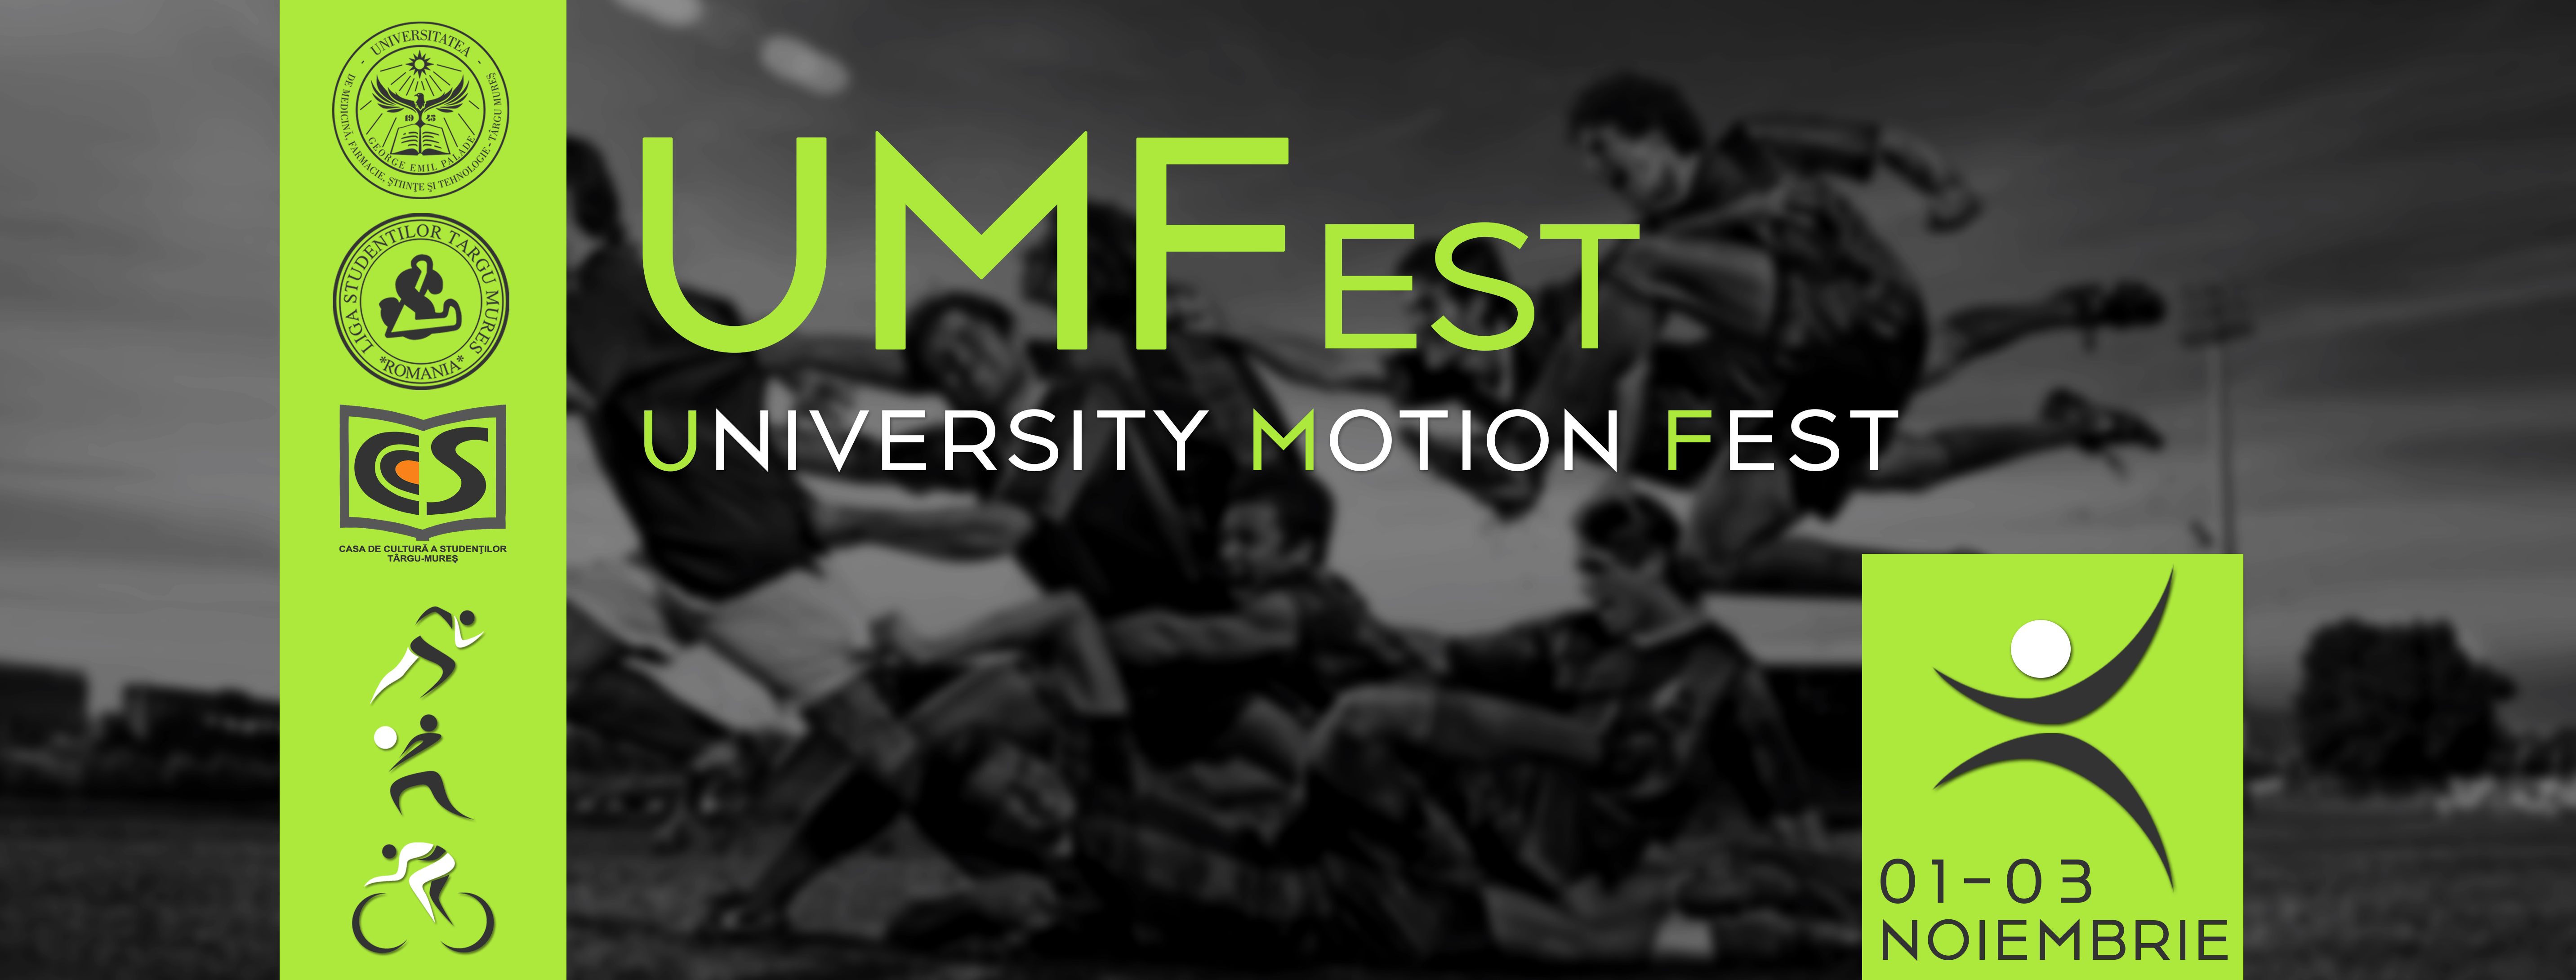 Înscrieri la festivalul sportiv UMFest!